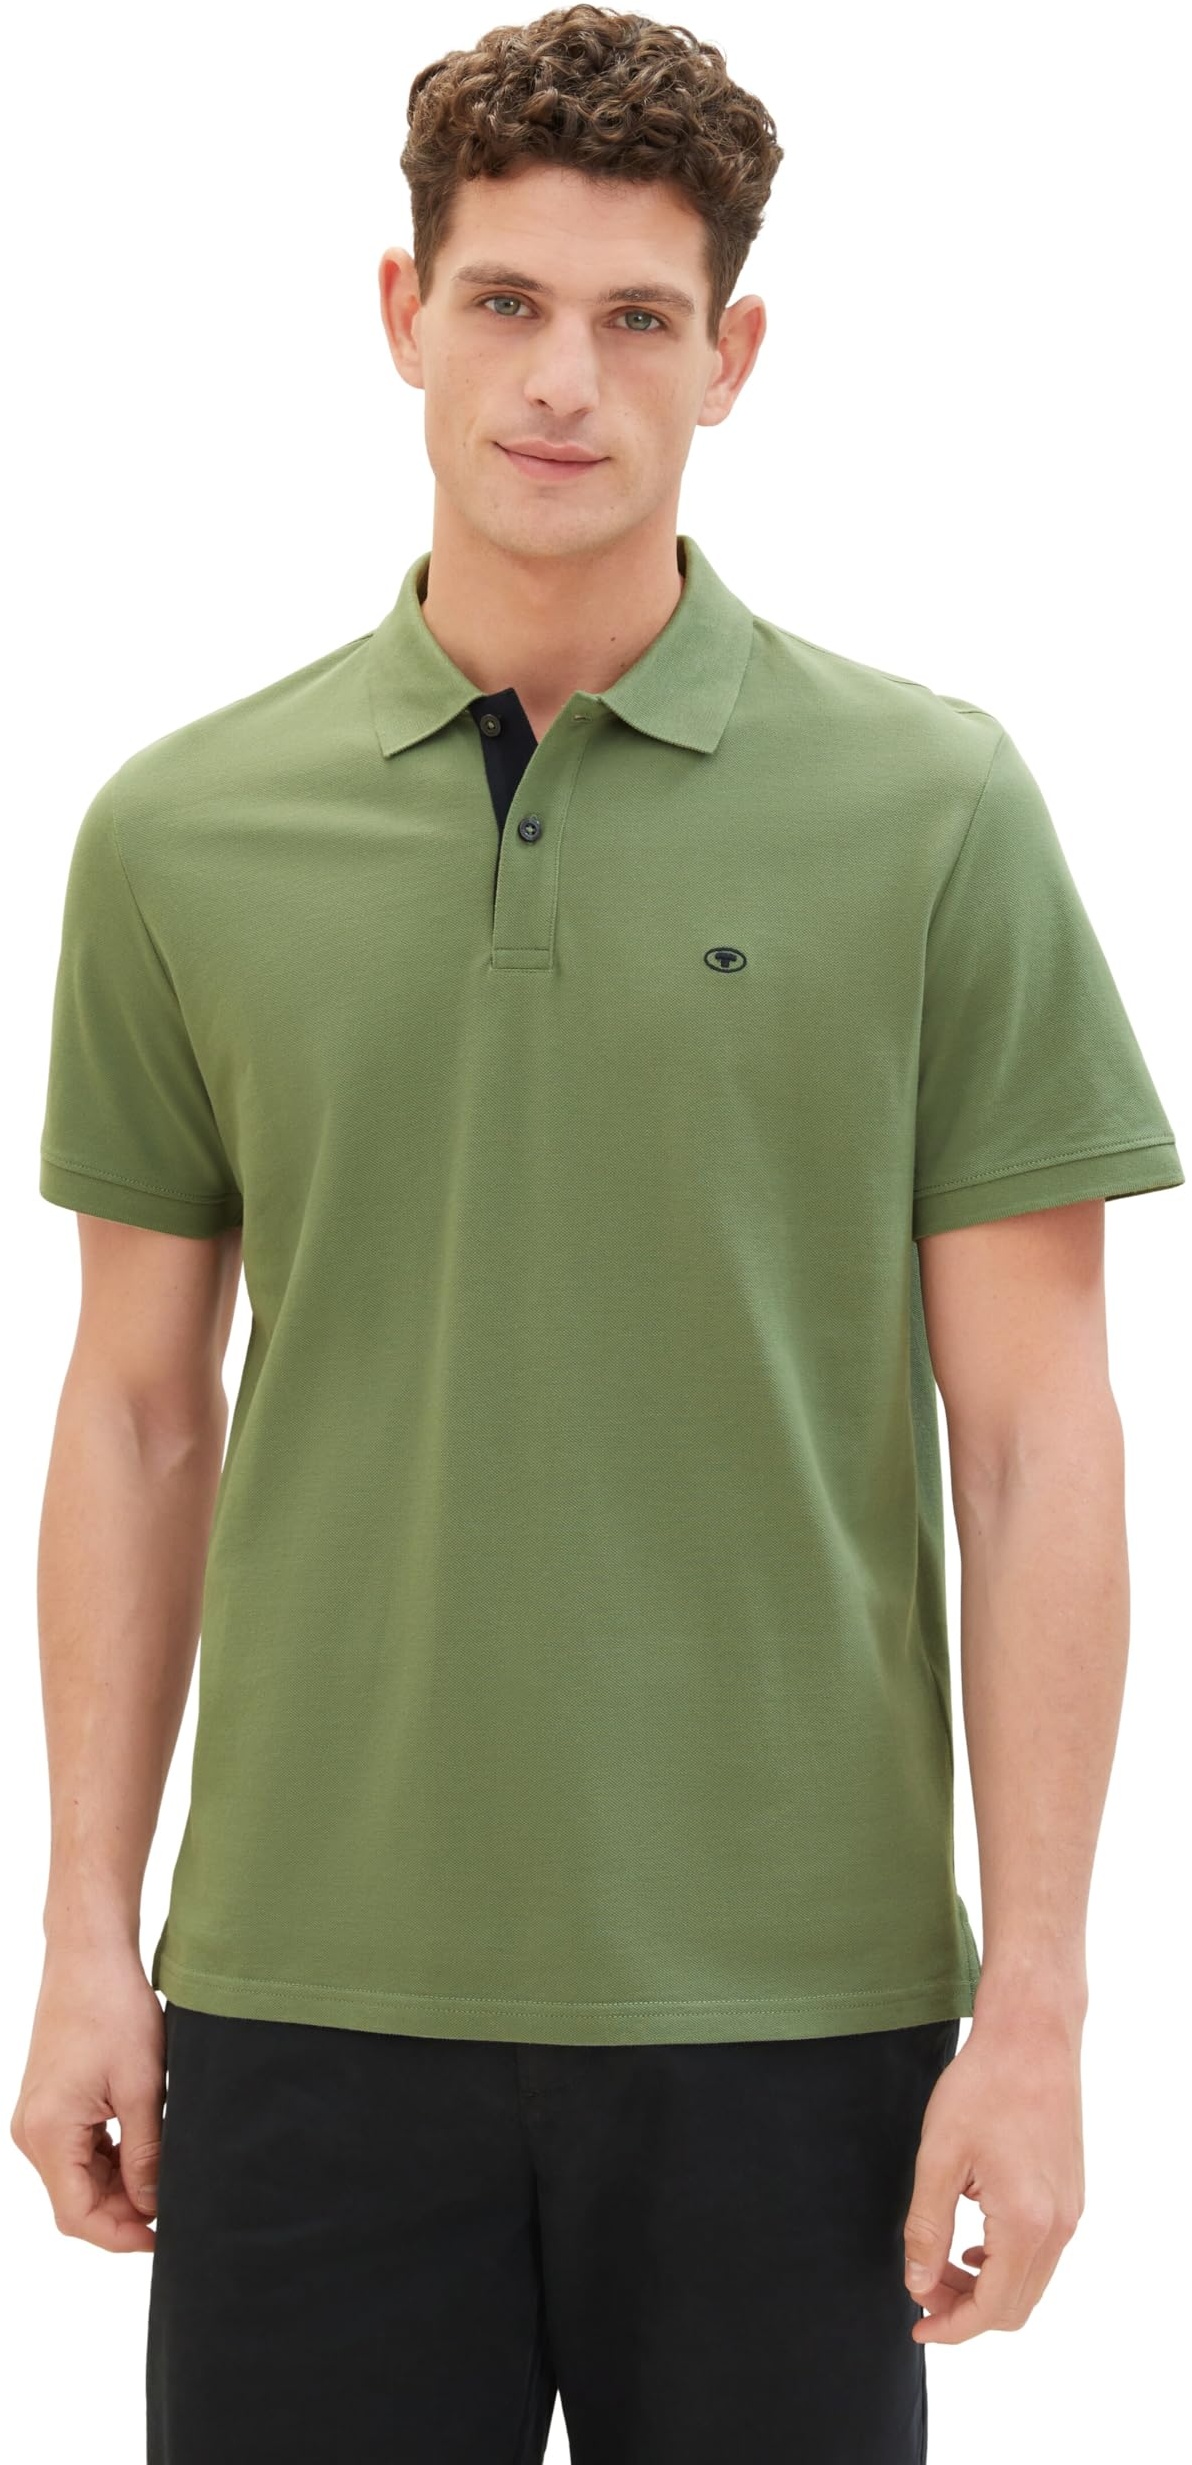 TOM TAILOR Herren Basic Piqué Poloshirt, dull moss green, XL